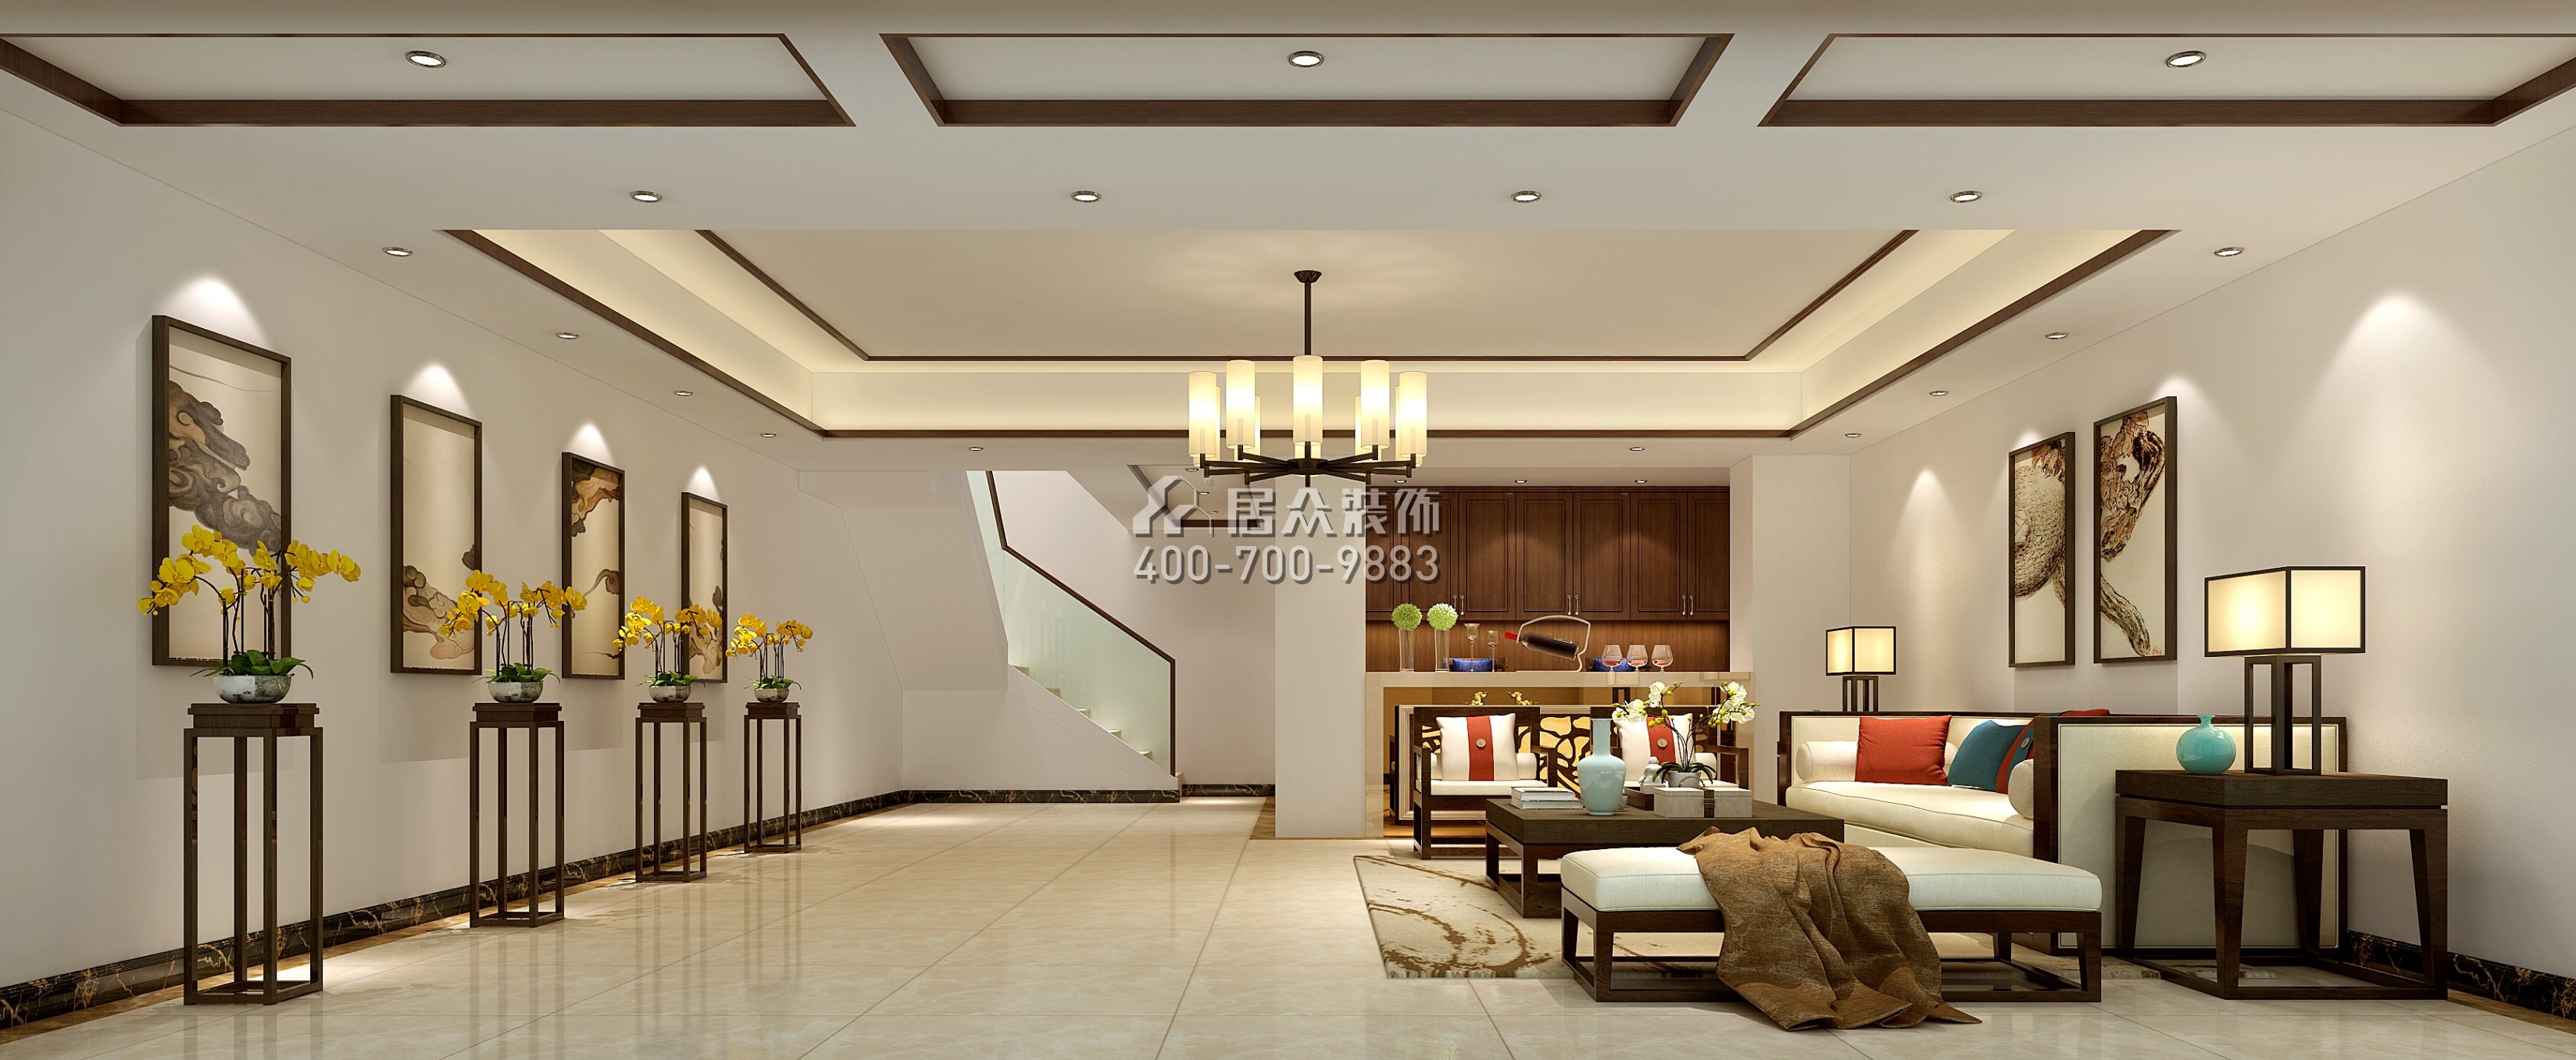 万林湖400平方米中式风格别墅户型客厅装修效果图